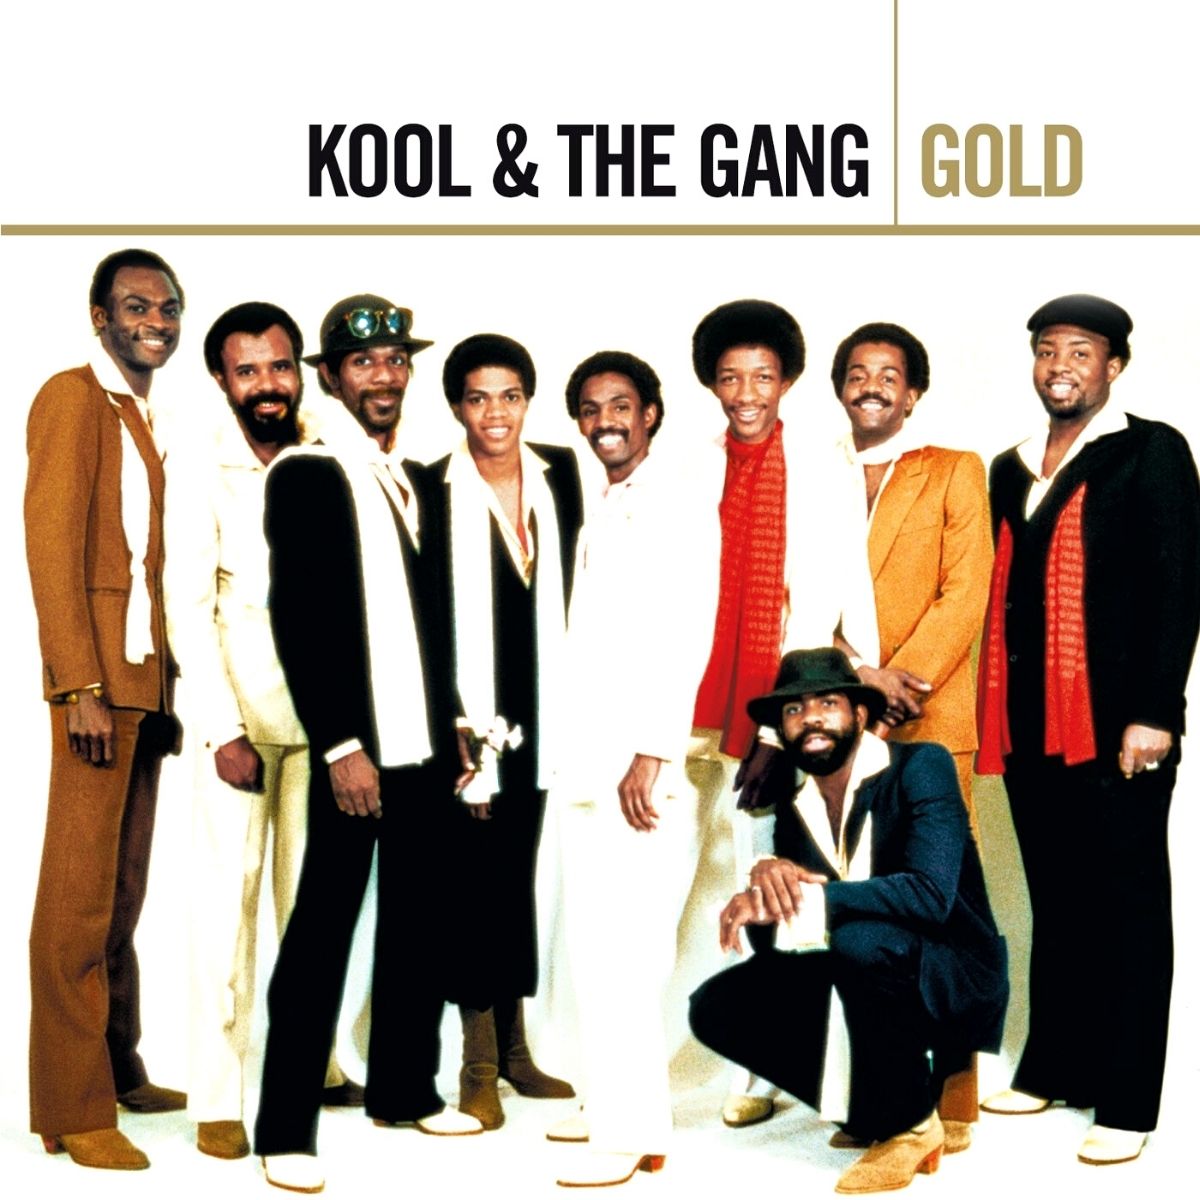 Kool & The Gang 在他们的专辑封面上